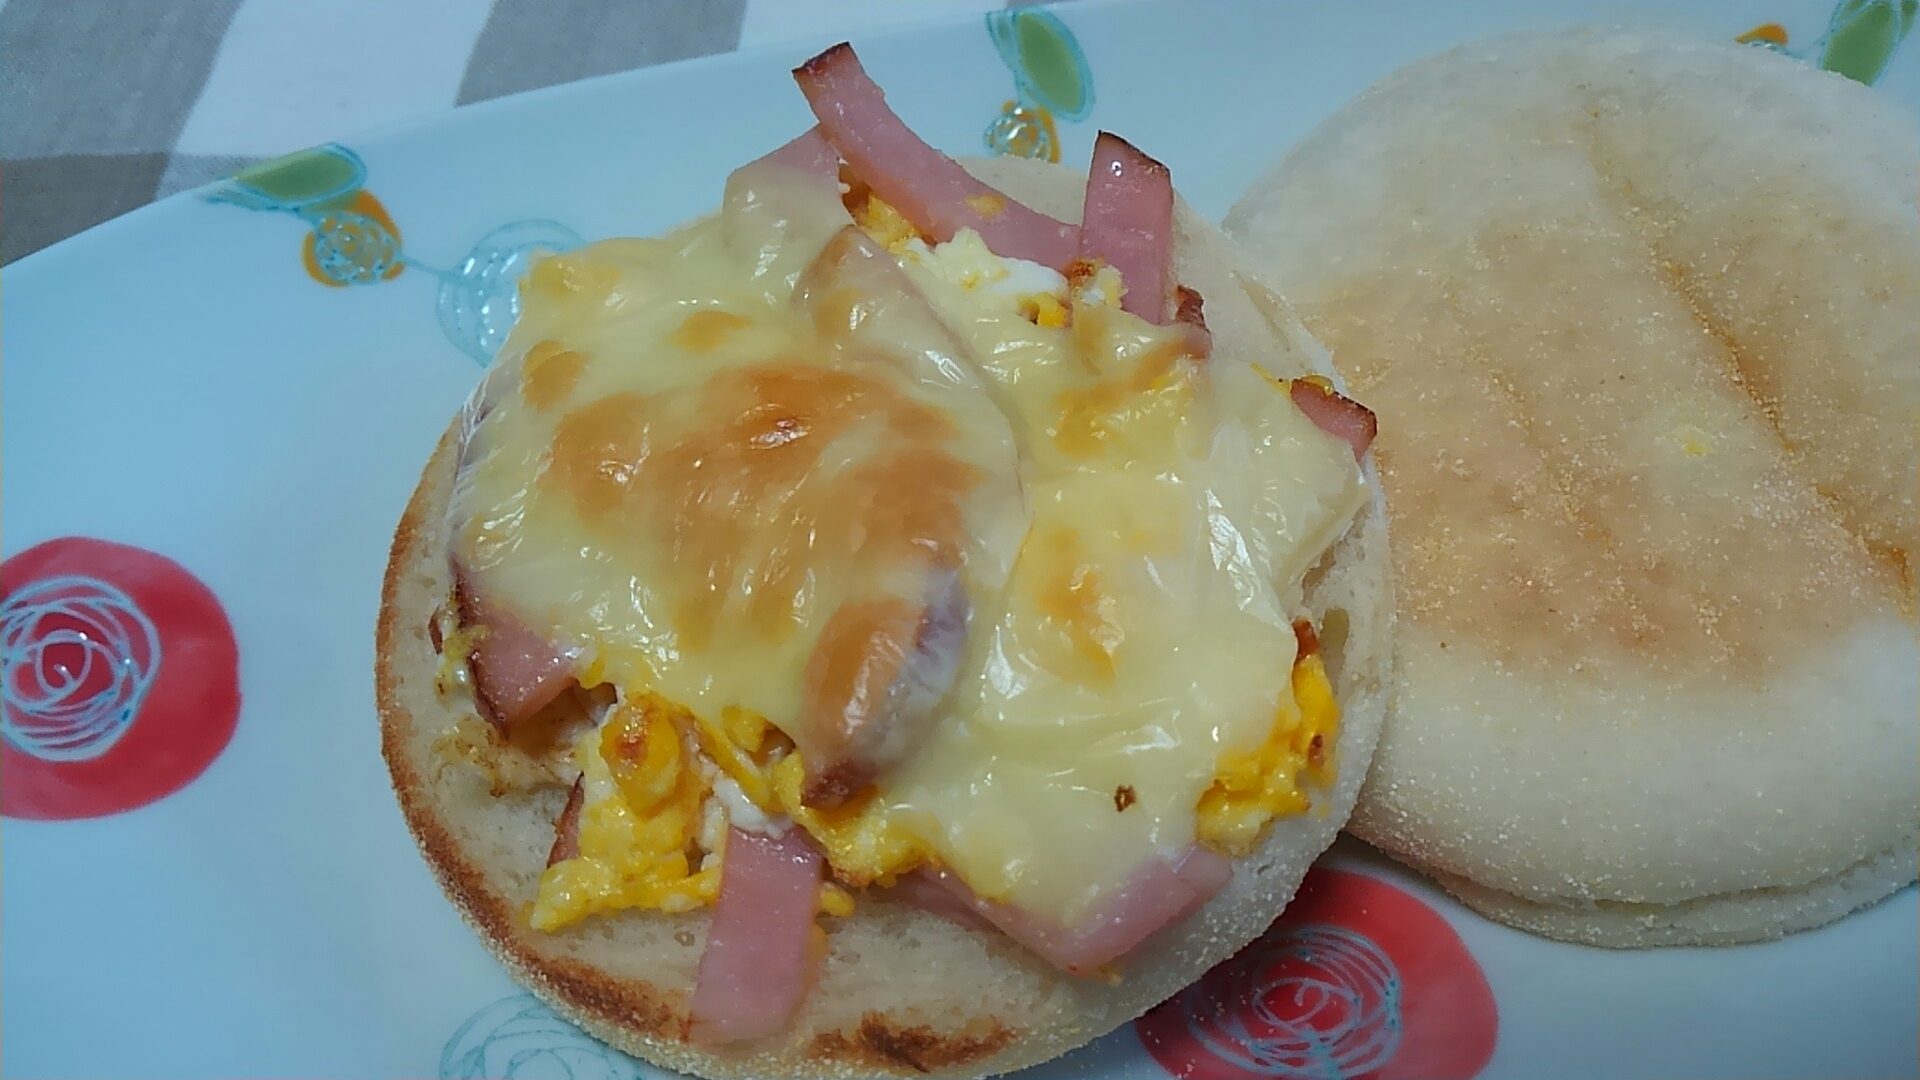 卵とハムとトロケルチーズのイングリッシュマフィン☆